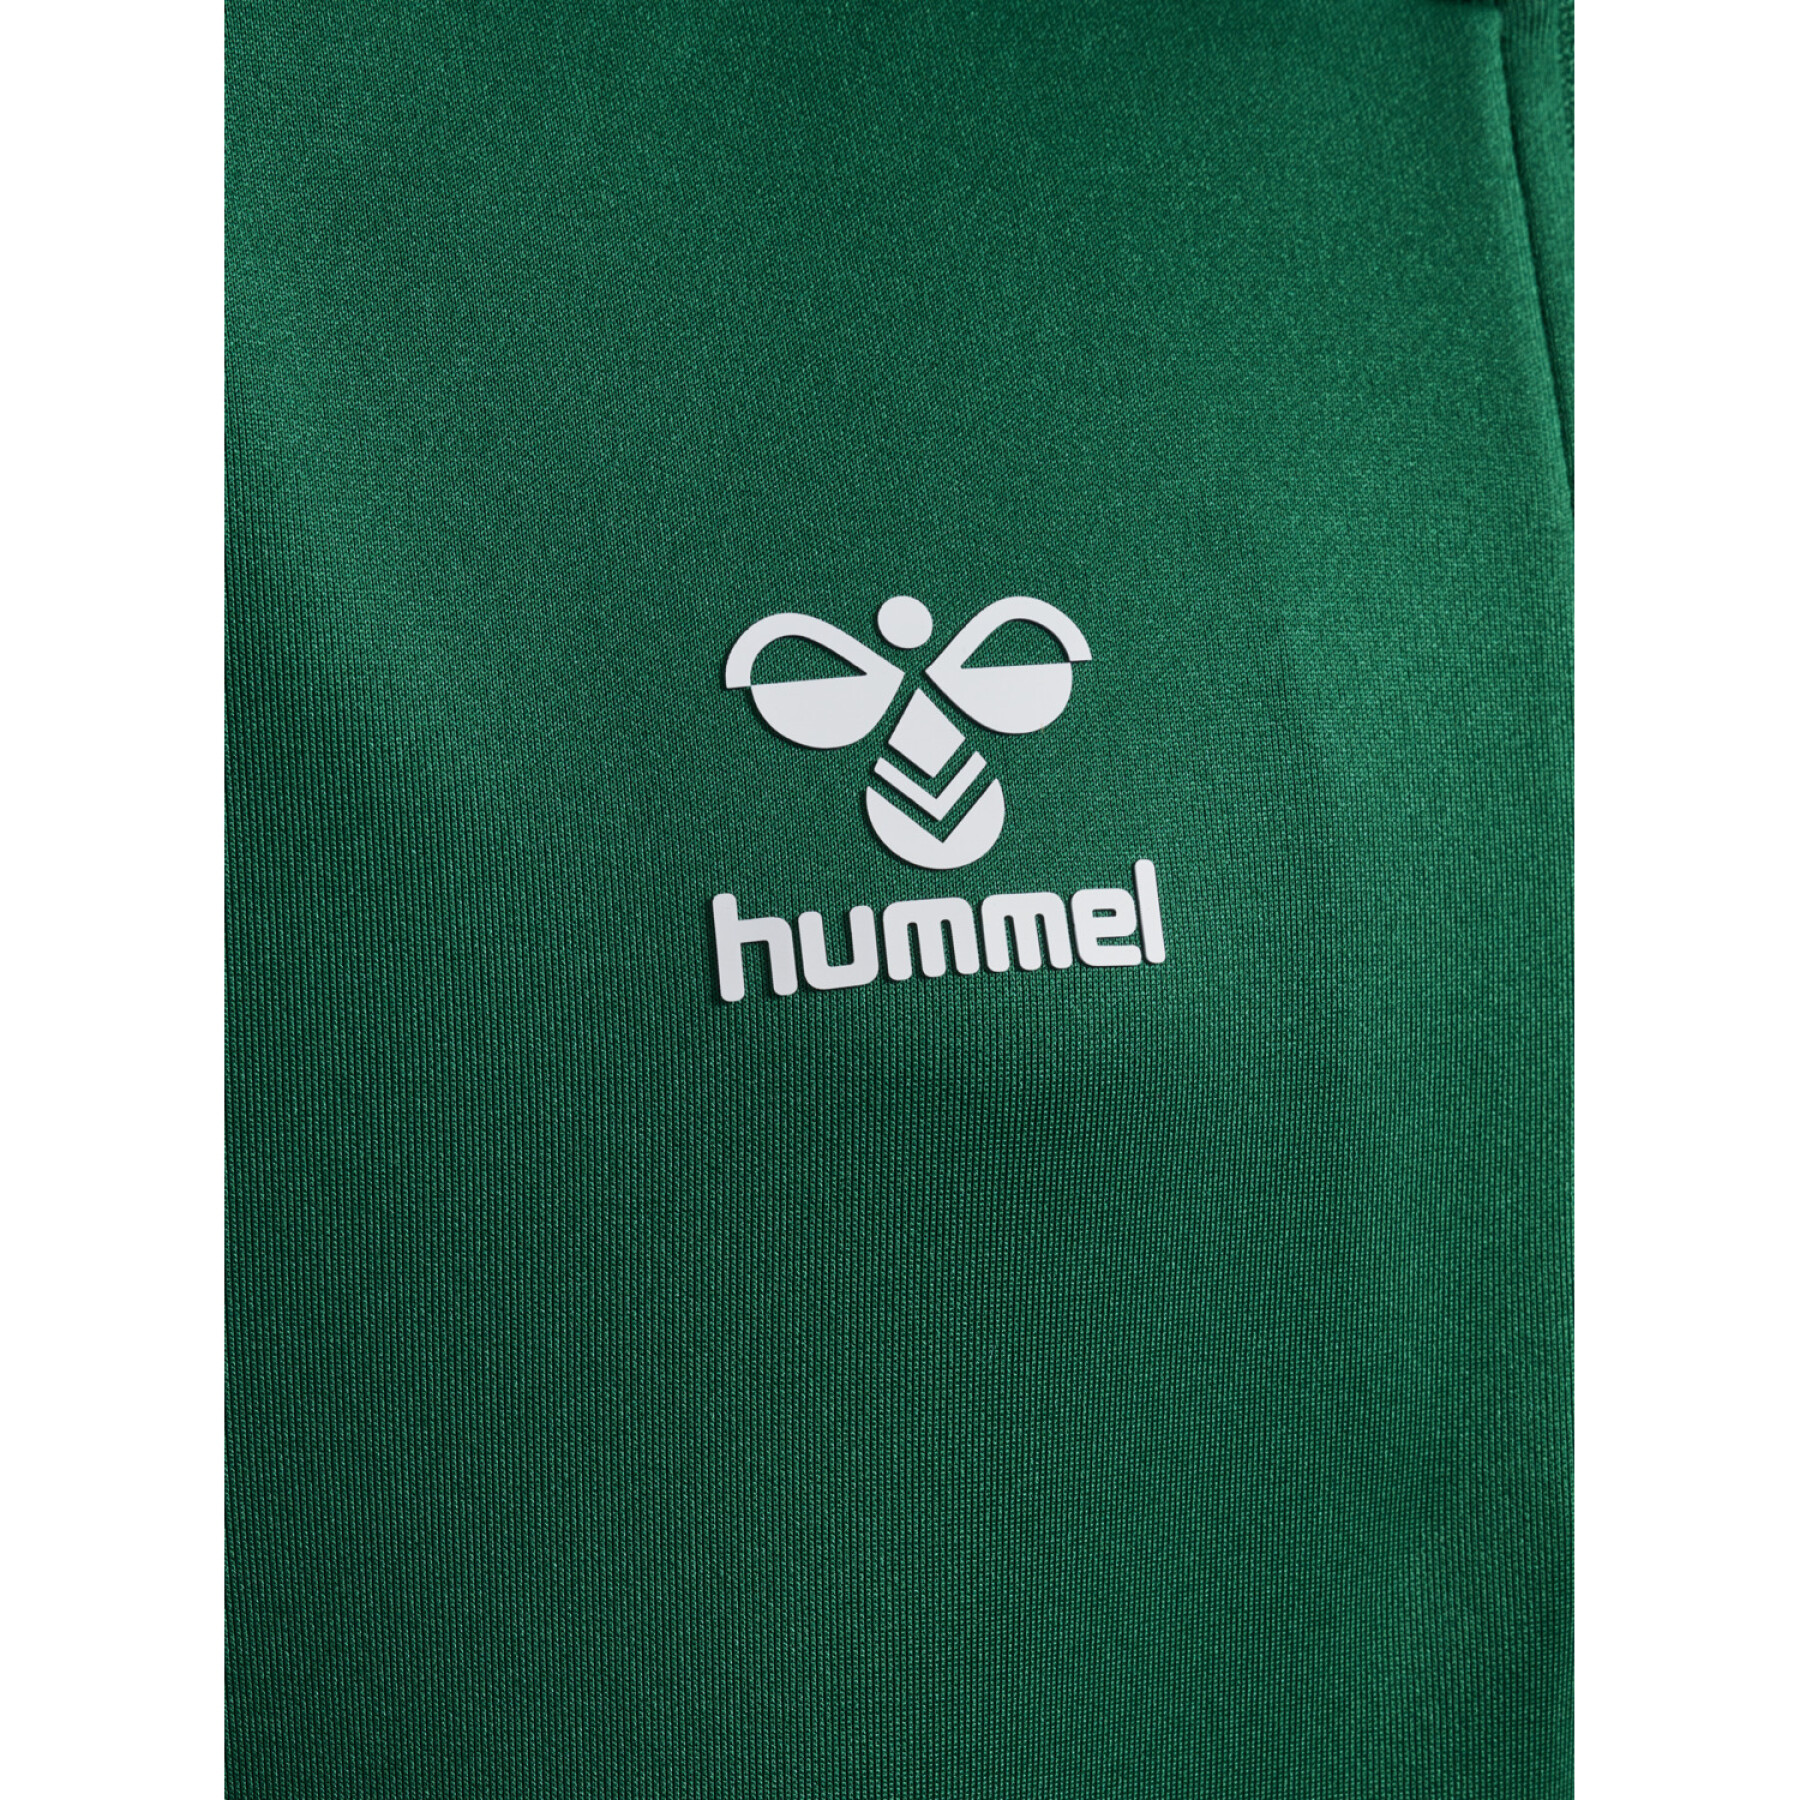 Kinder-Trainingsjacke Hummel Core Xk Half